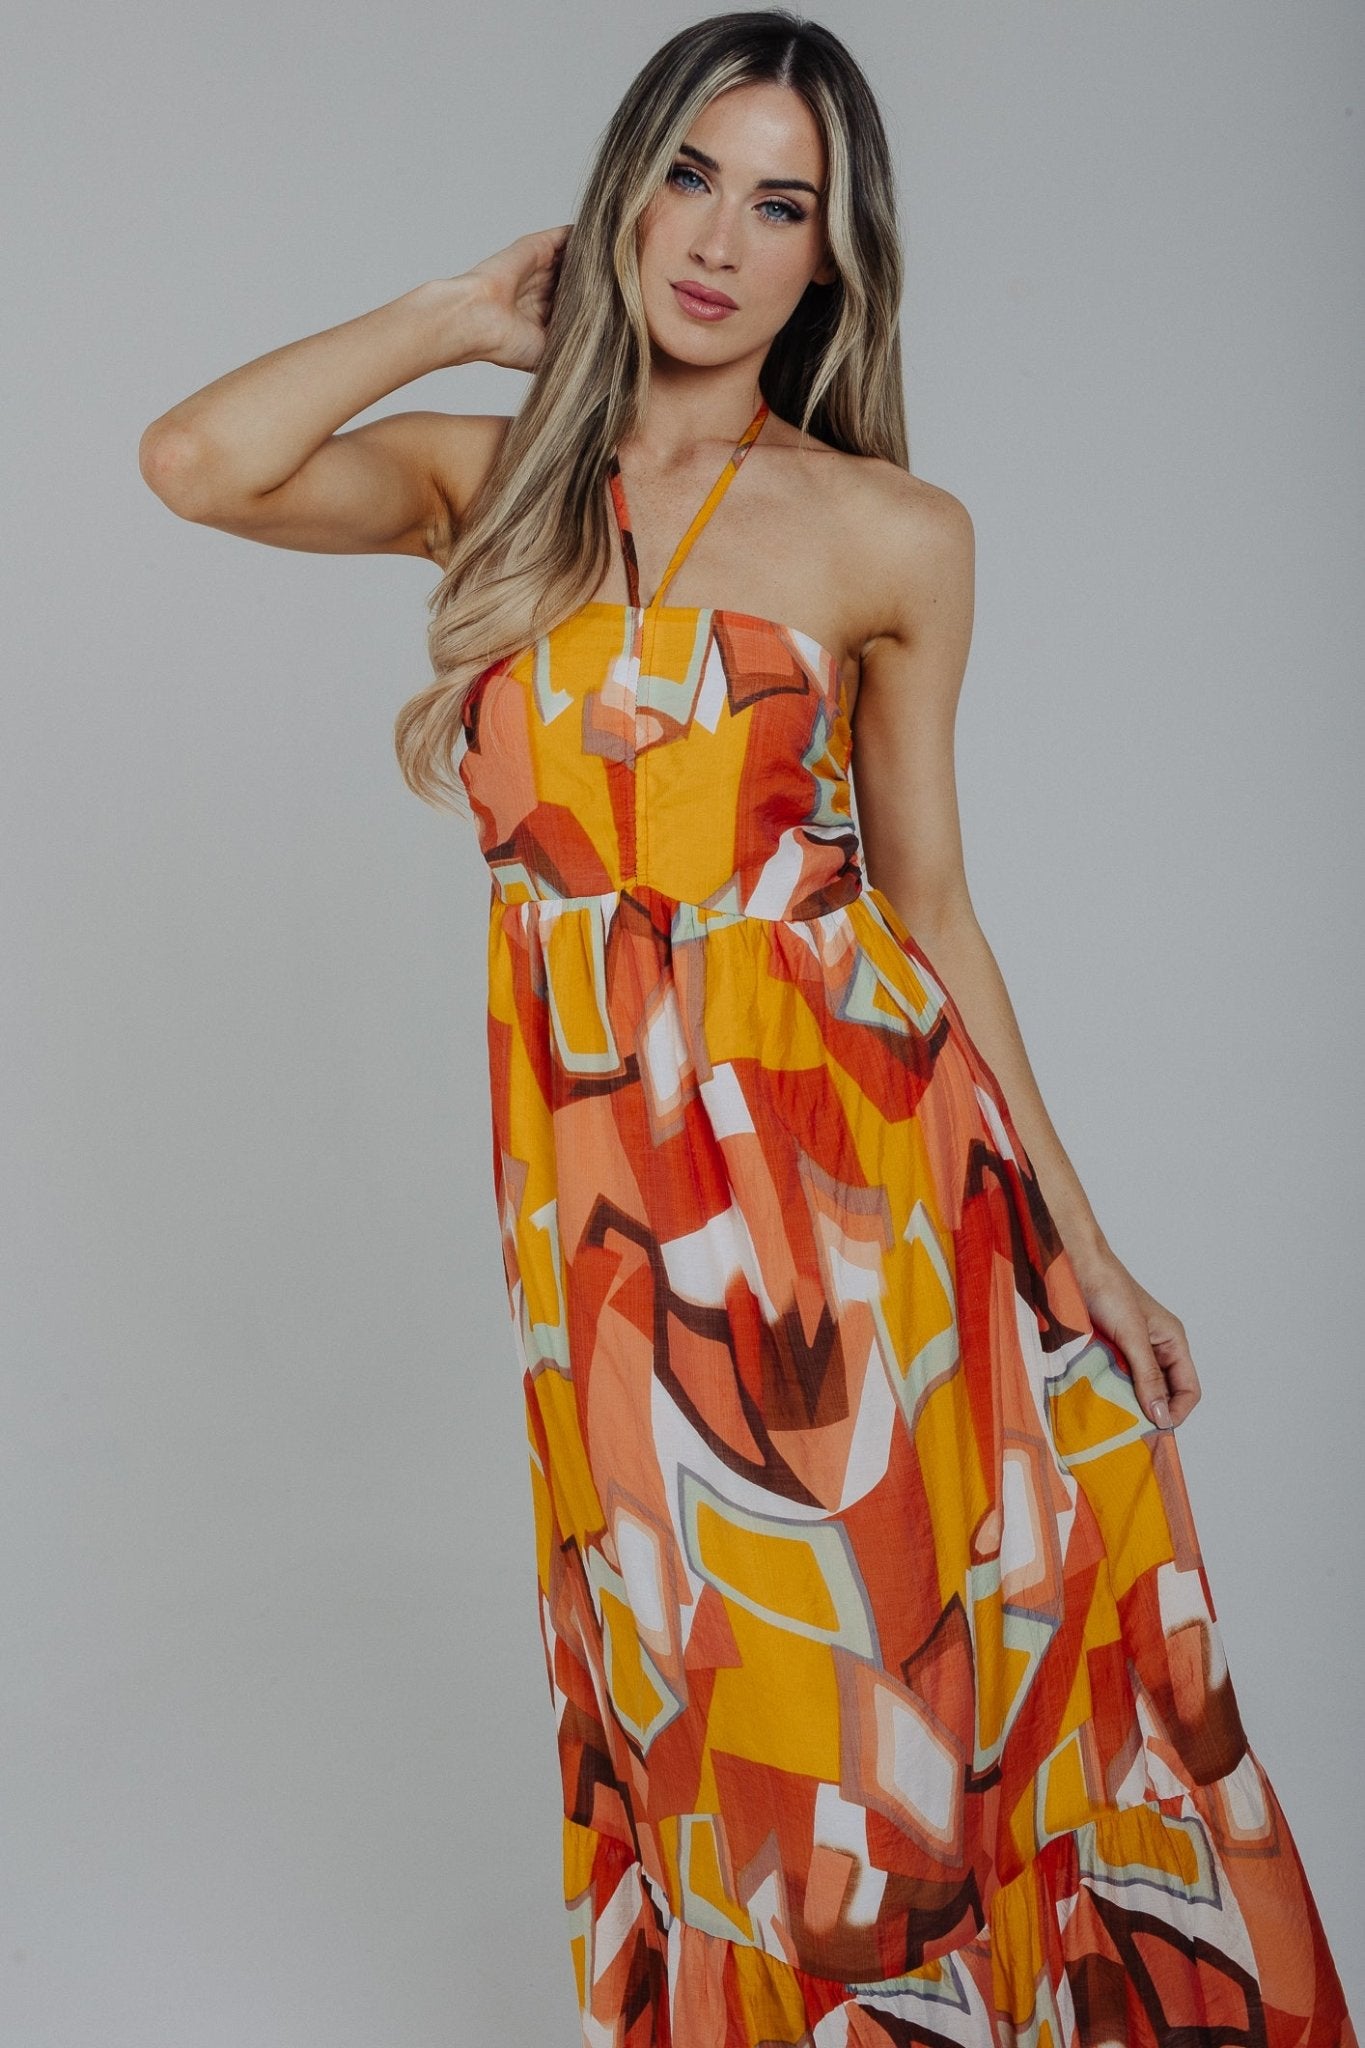 Holly Halter Neck Midi Dress In Orange Mix - The Walk in Wardrobe